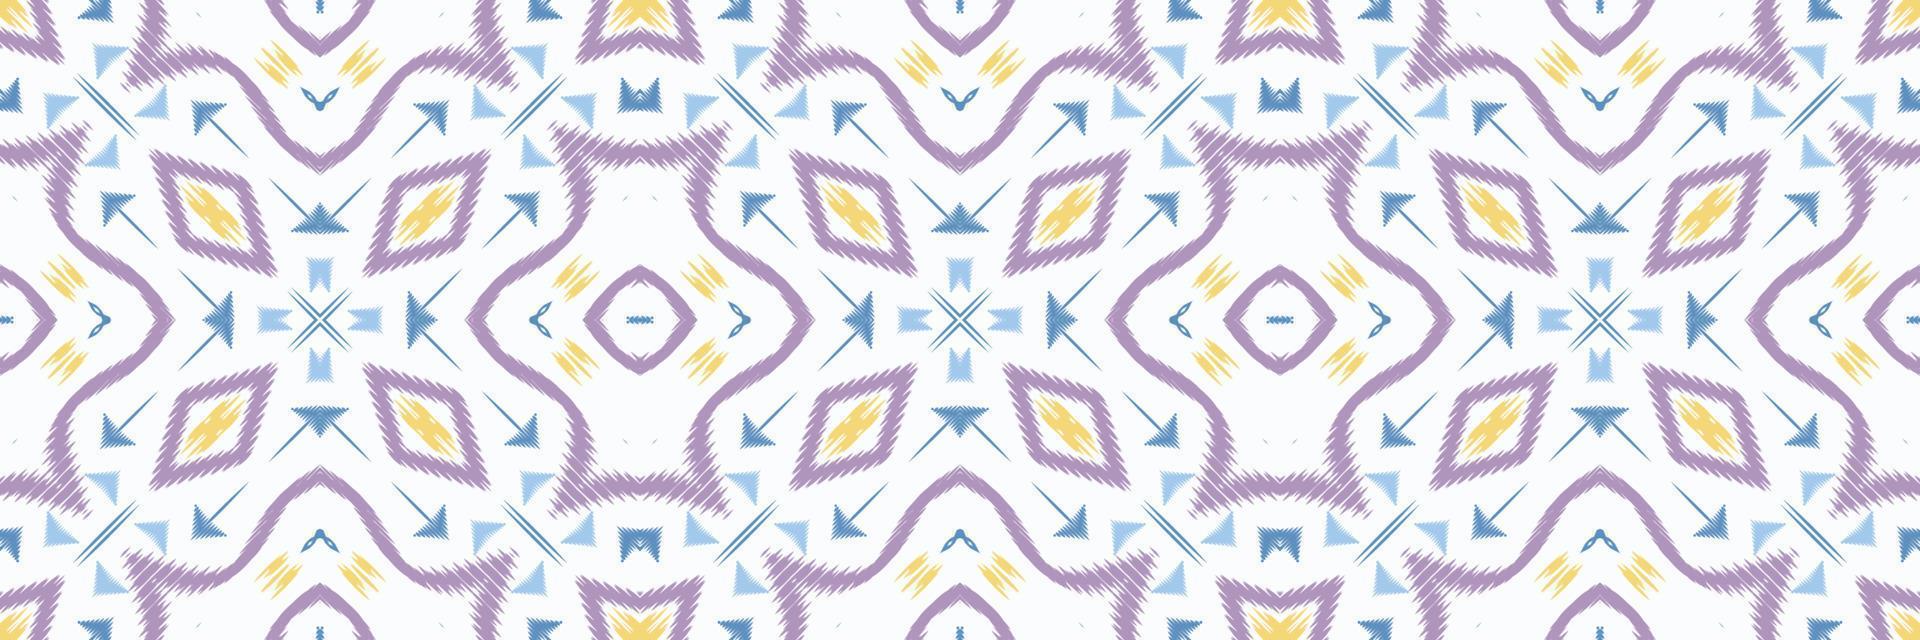 ikat blomma batik textil- sömlös mönster digital vektor design för skriva ut saree kurti borneo tyg gräns borsta symboler färgrutor eleganta